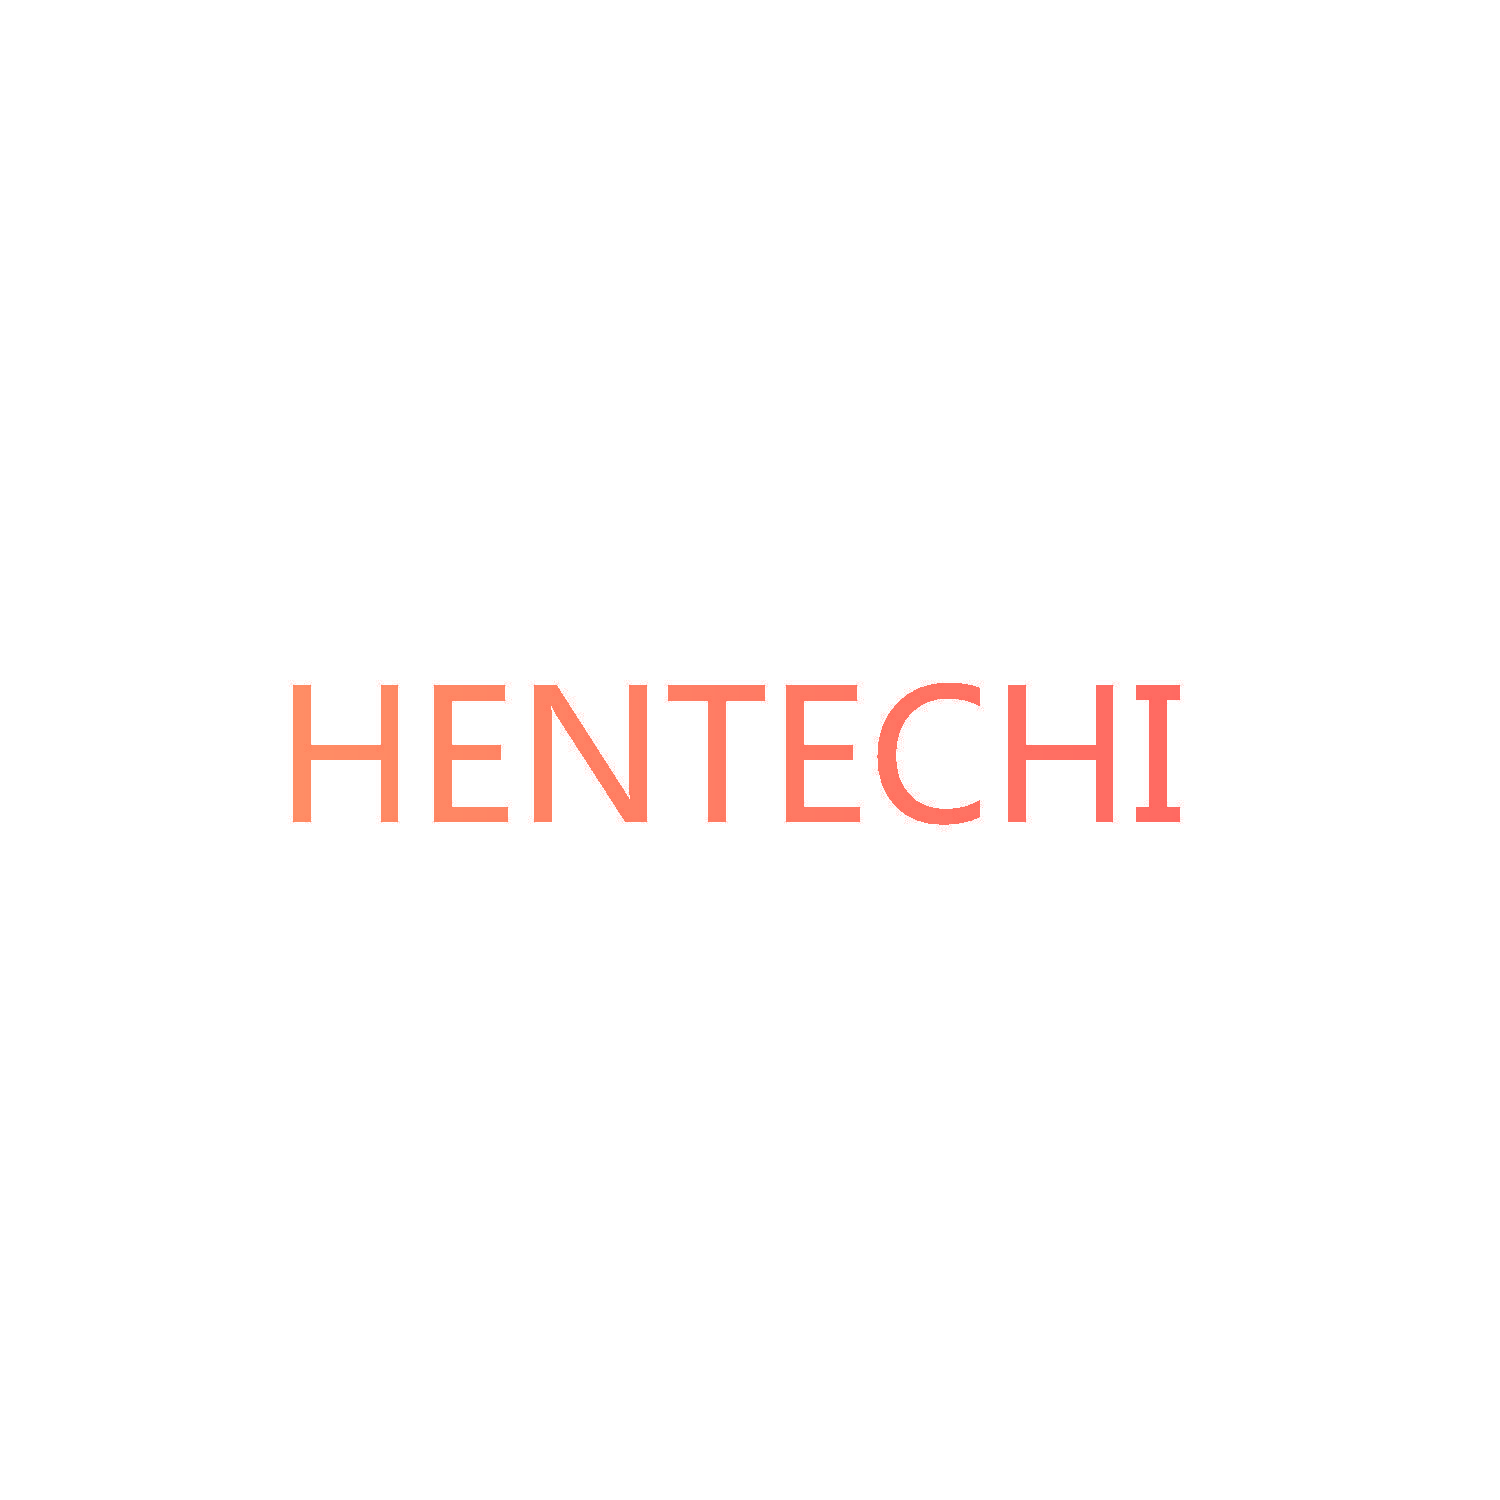 HENTECHI